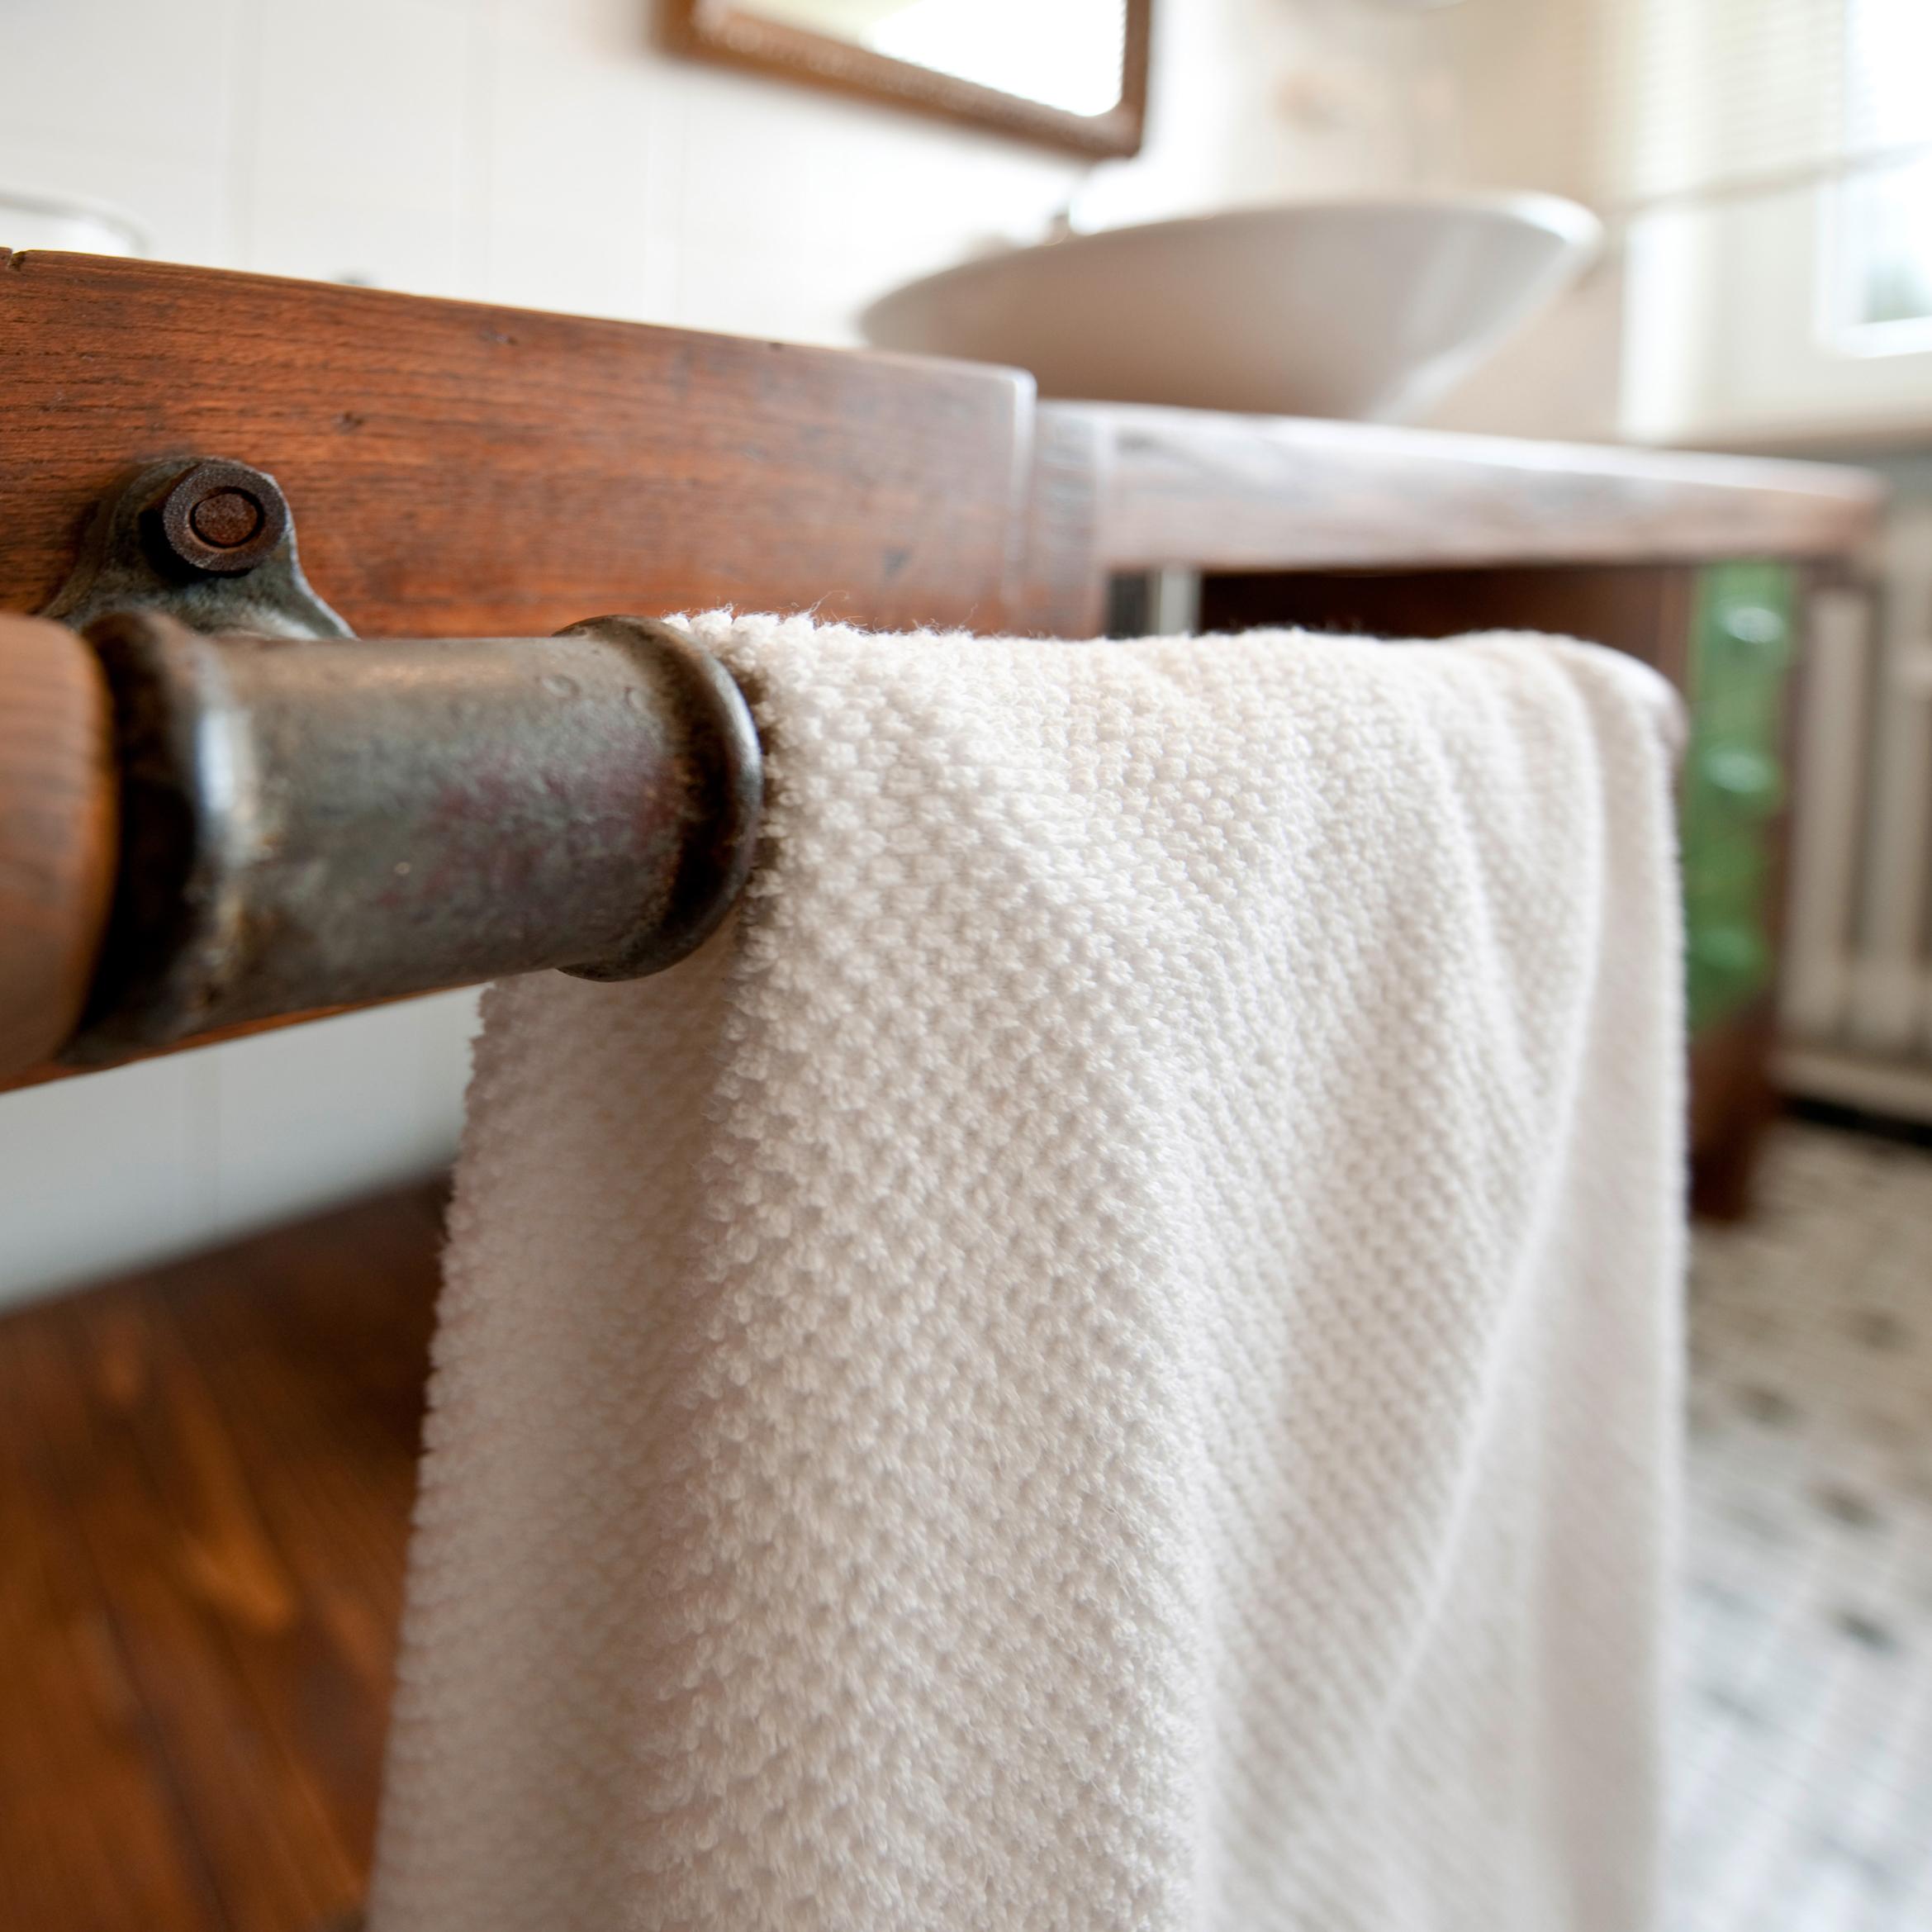 Handtuchhalter #badezimmer #waschtisch #handtuchhalter ©Zolaproduction